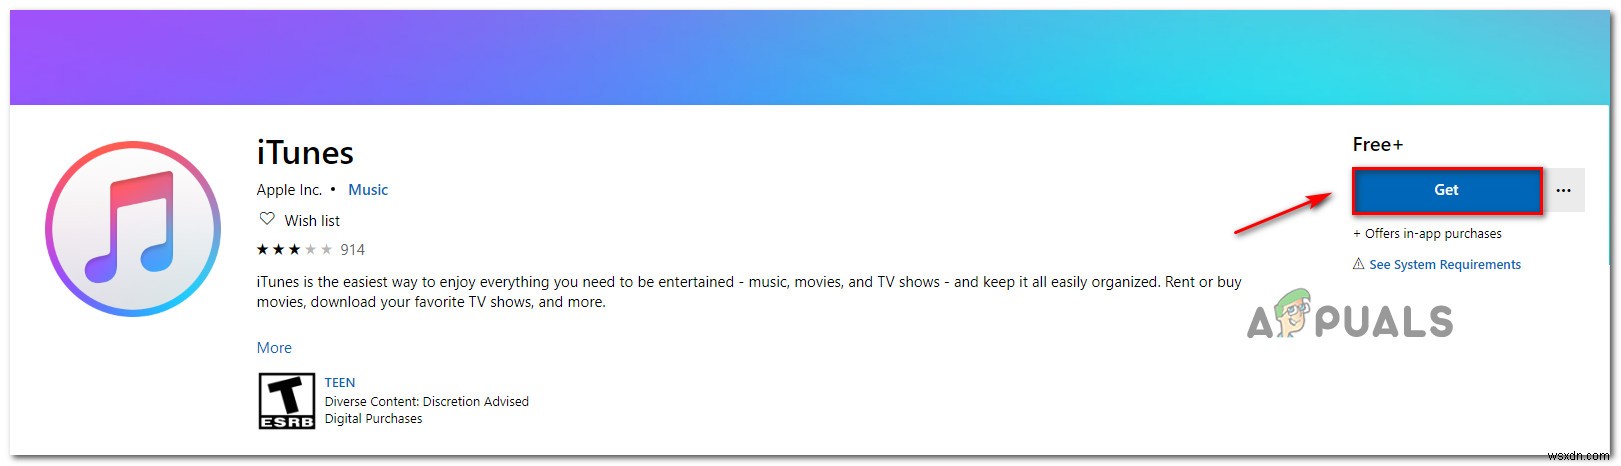 [FIX] iTunes 오류  영화를 HD로 재생할 수 없습니다 